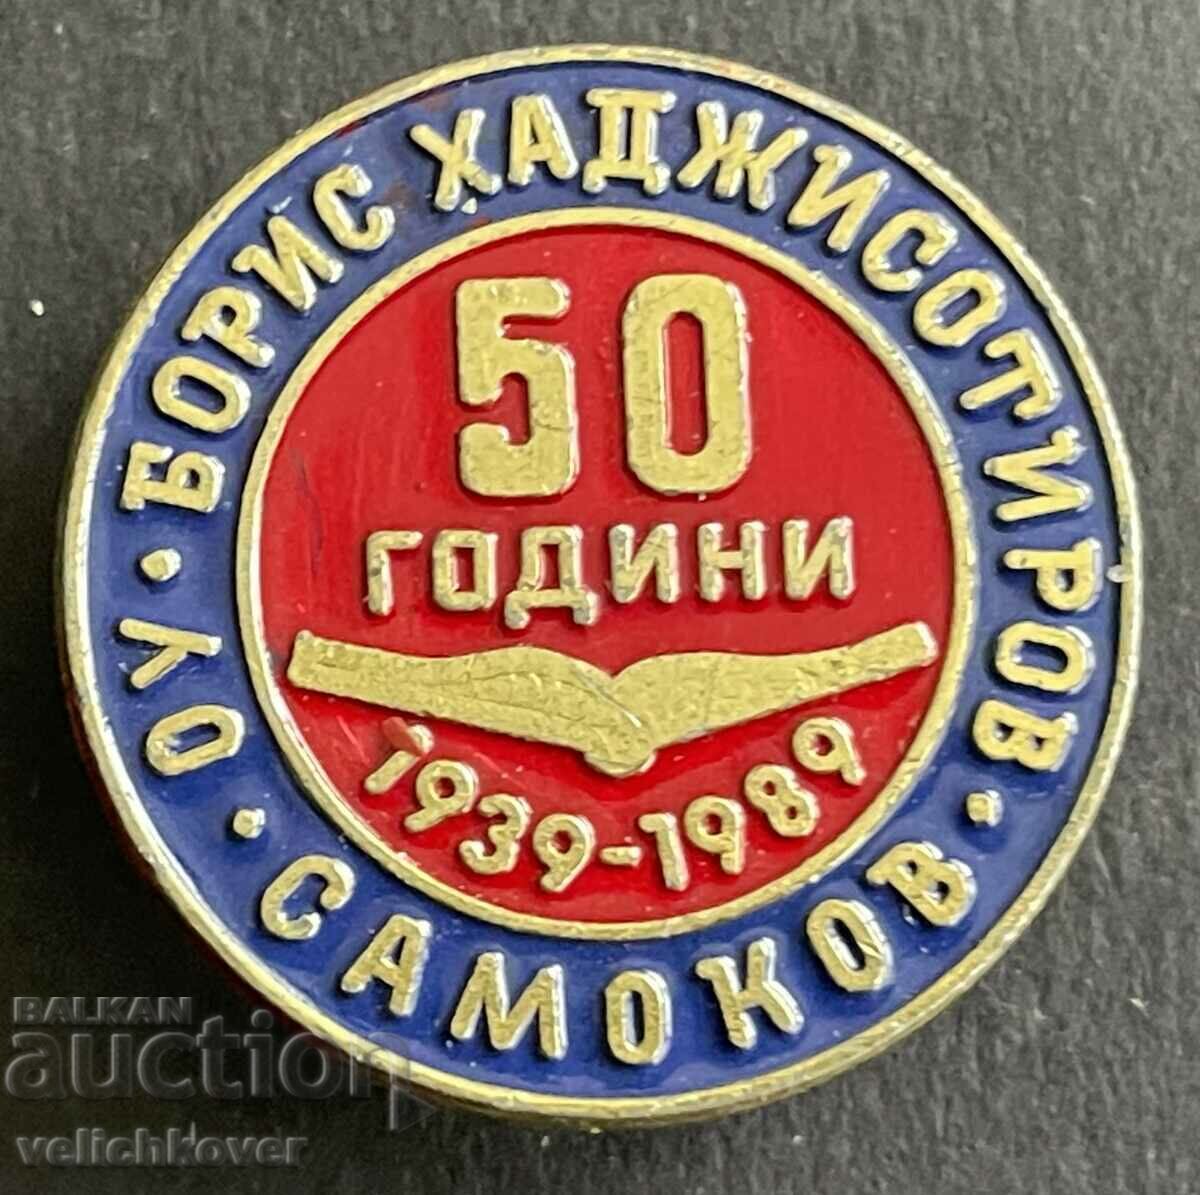 37543 България знак 50г. Основно училище Борис Хаджисотиров